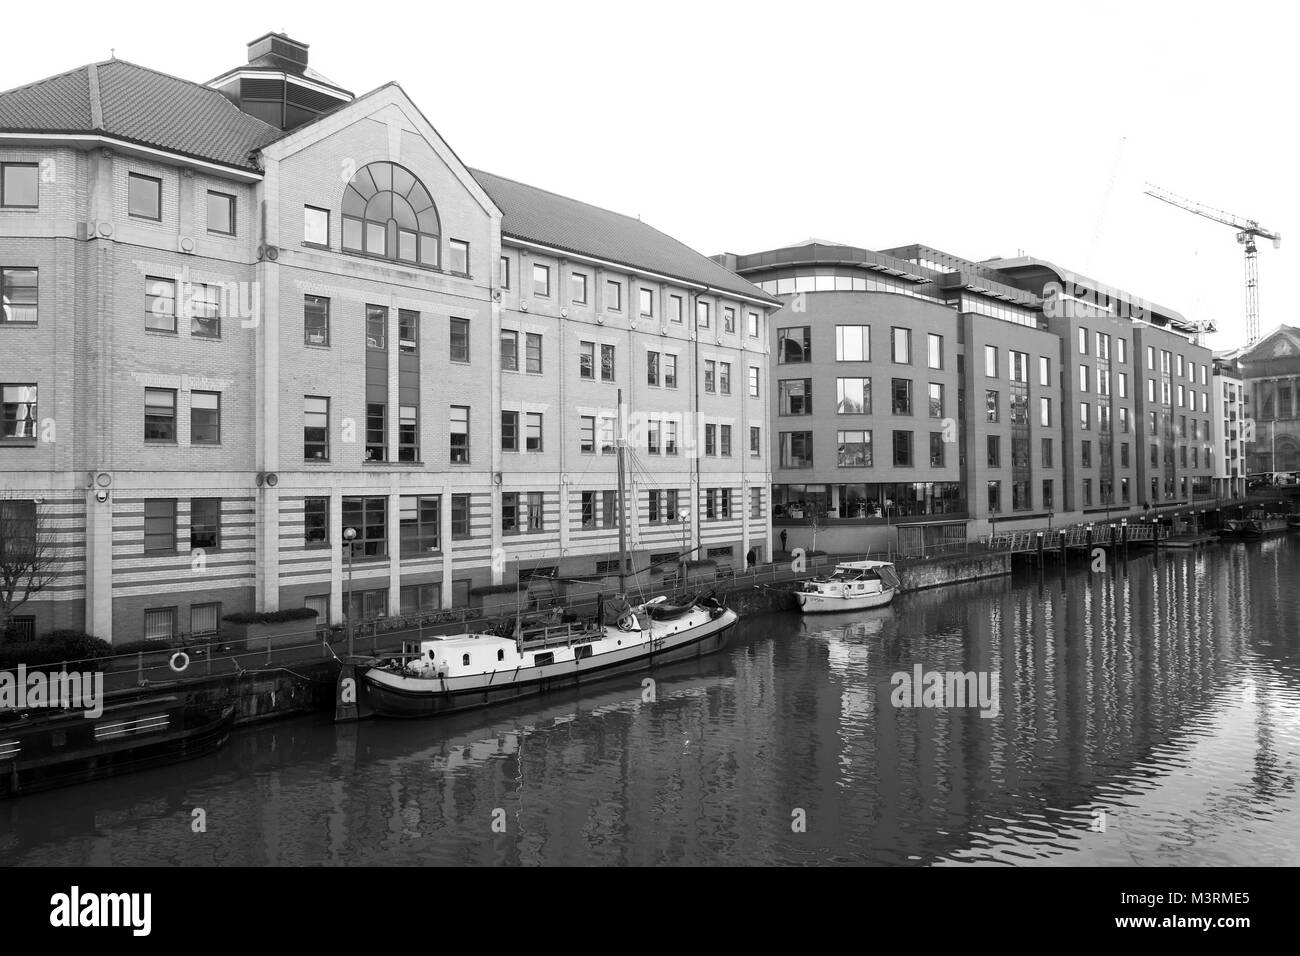 Février 2018 - immeubles de bureaux modernes sur le front de fleuve, dans le centre de Bristol. Banque D'Images